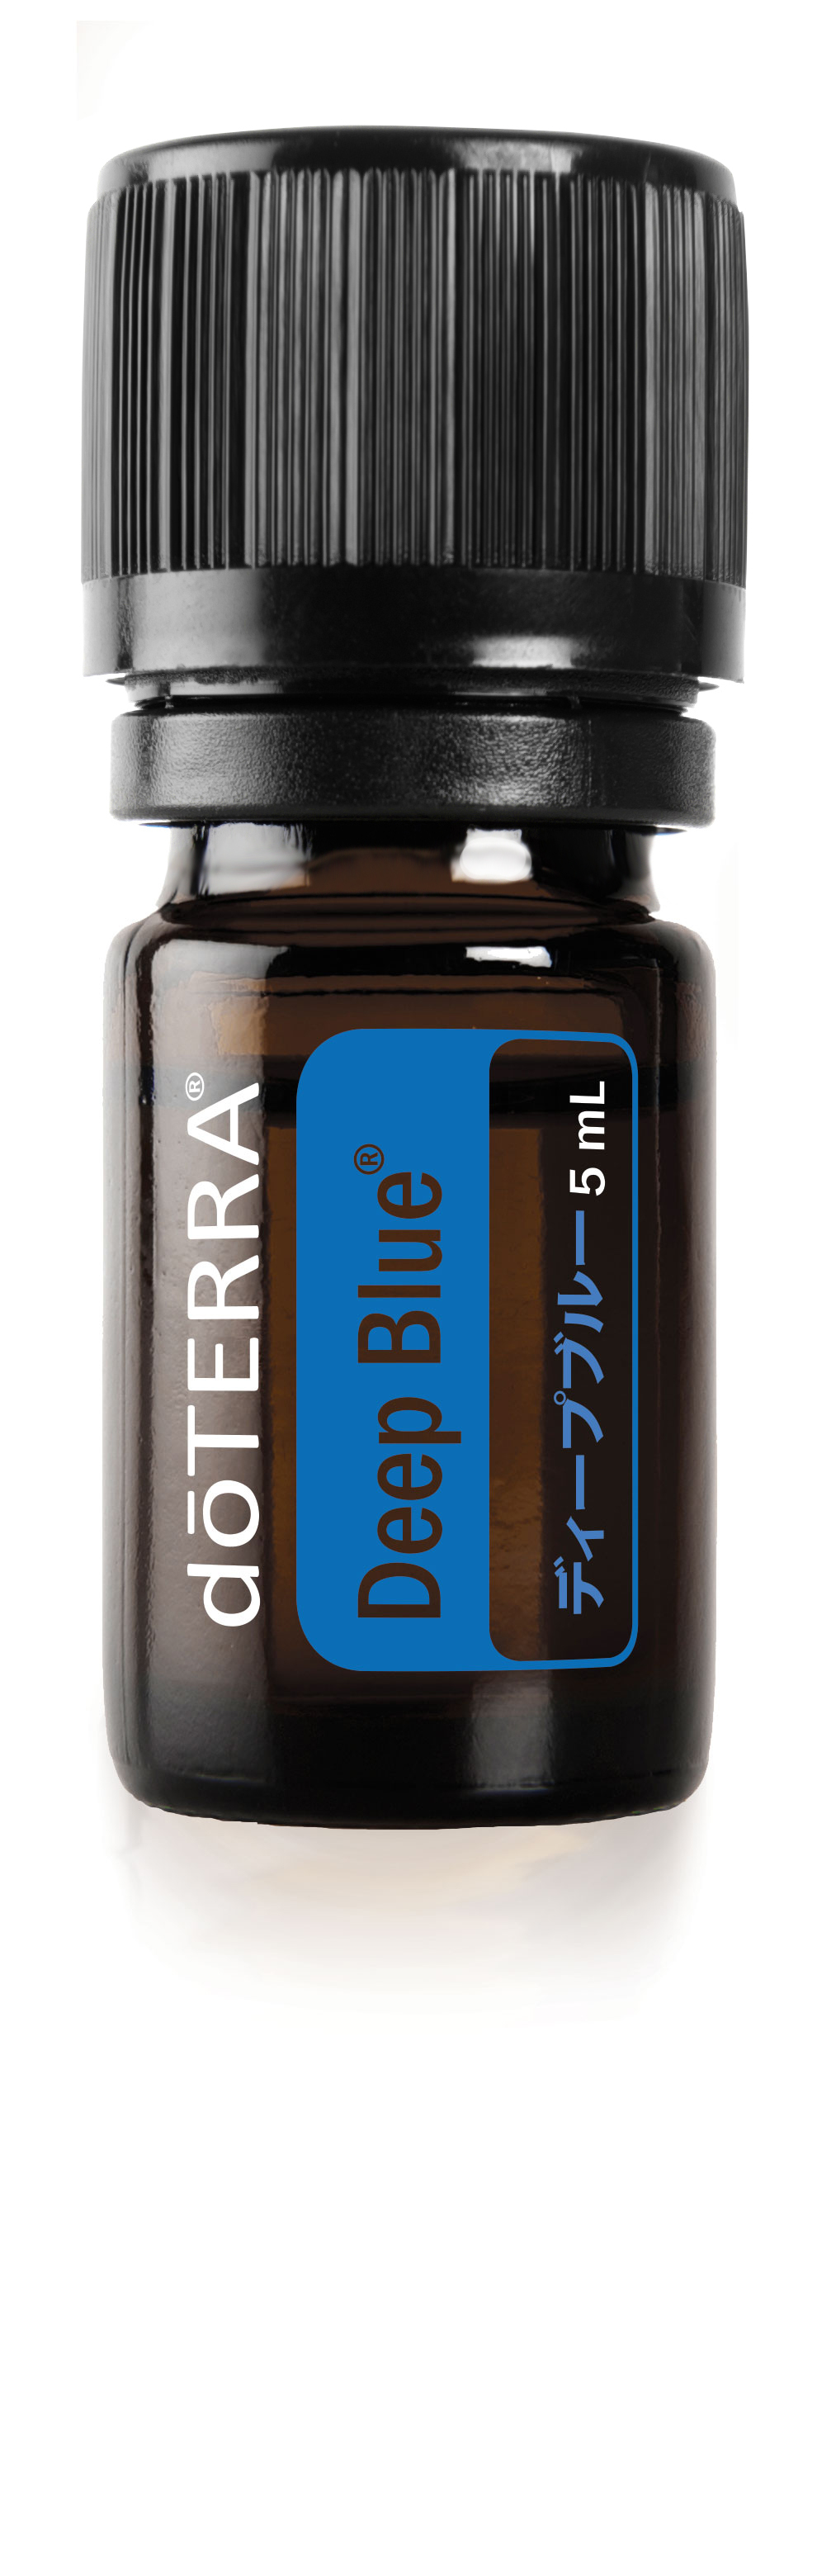 ディープブルー | doTERRA Essential Oils